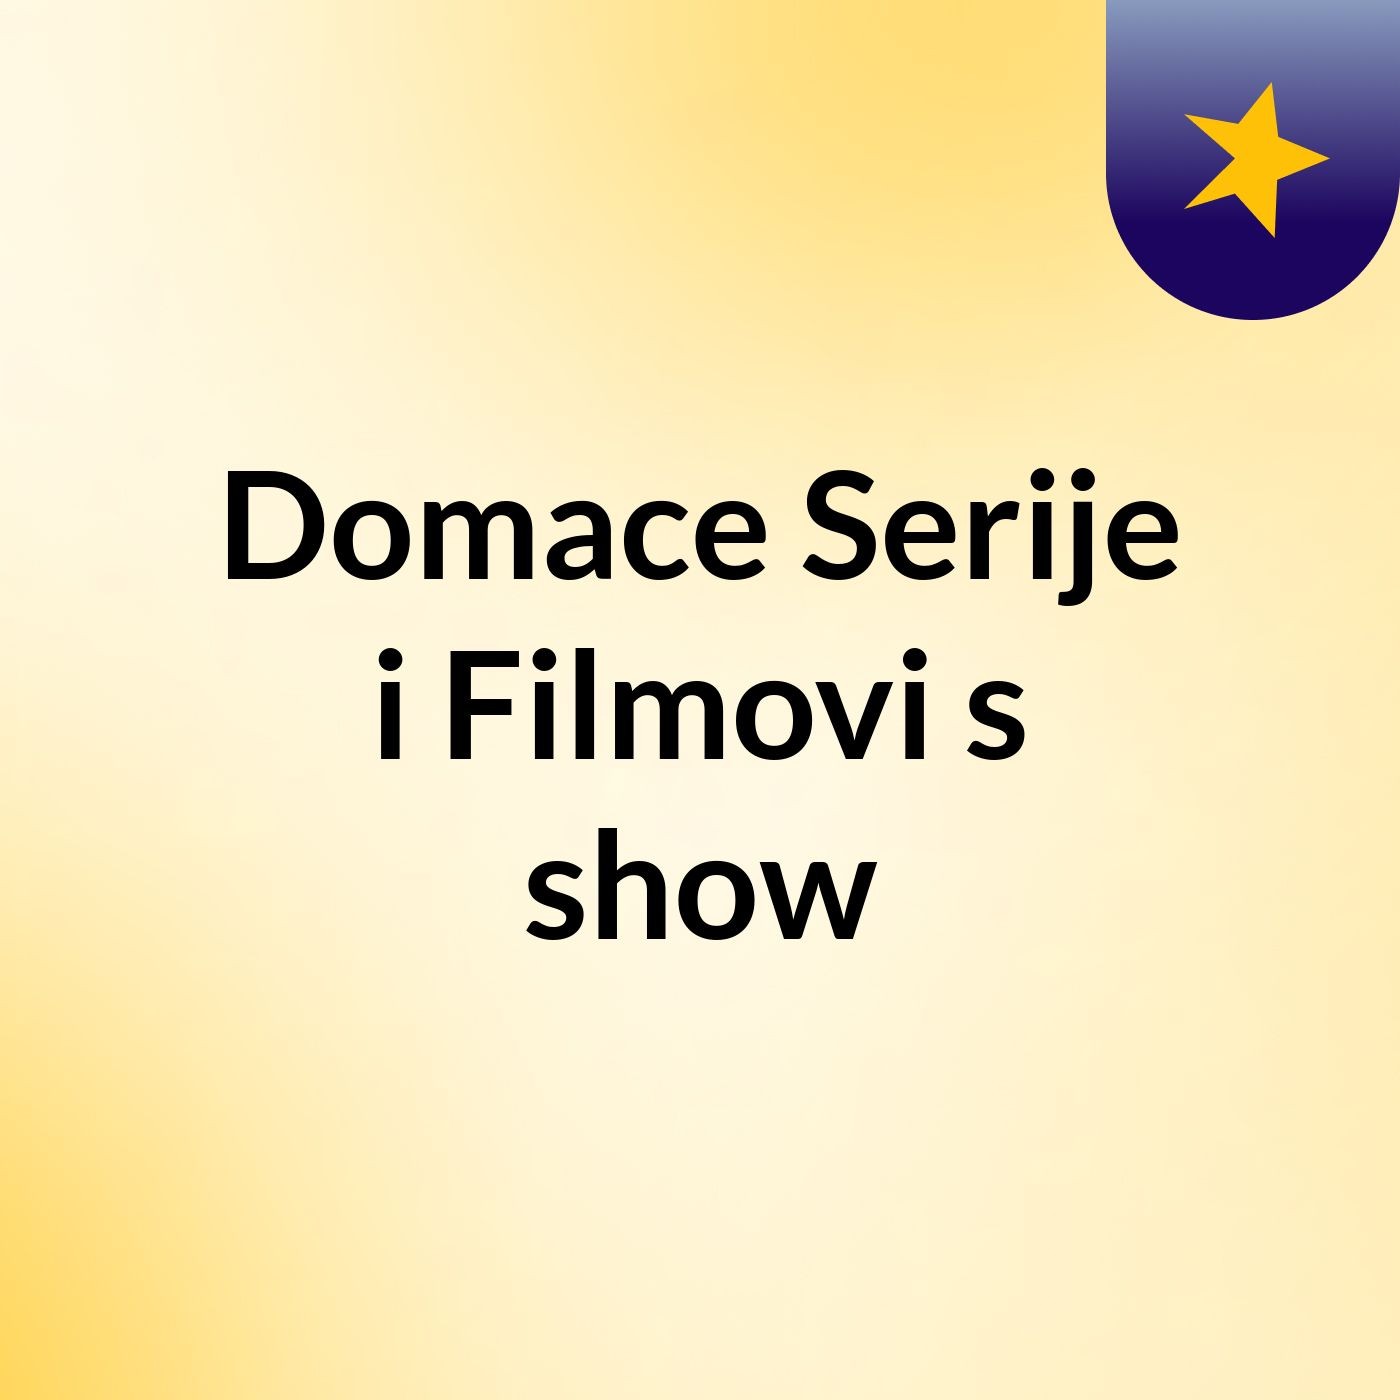 Domace Serije i Filmovi's show